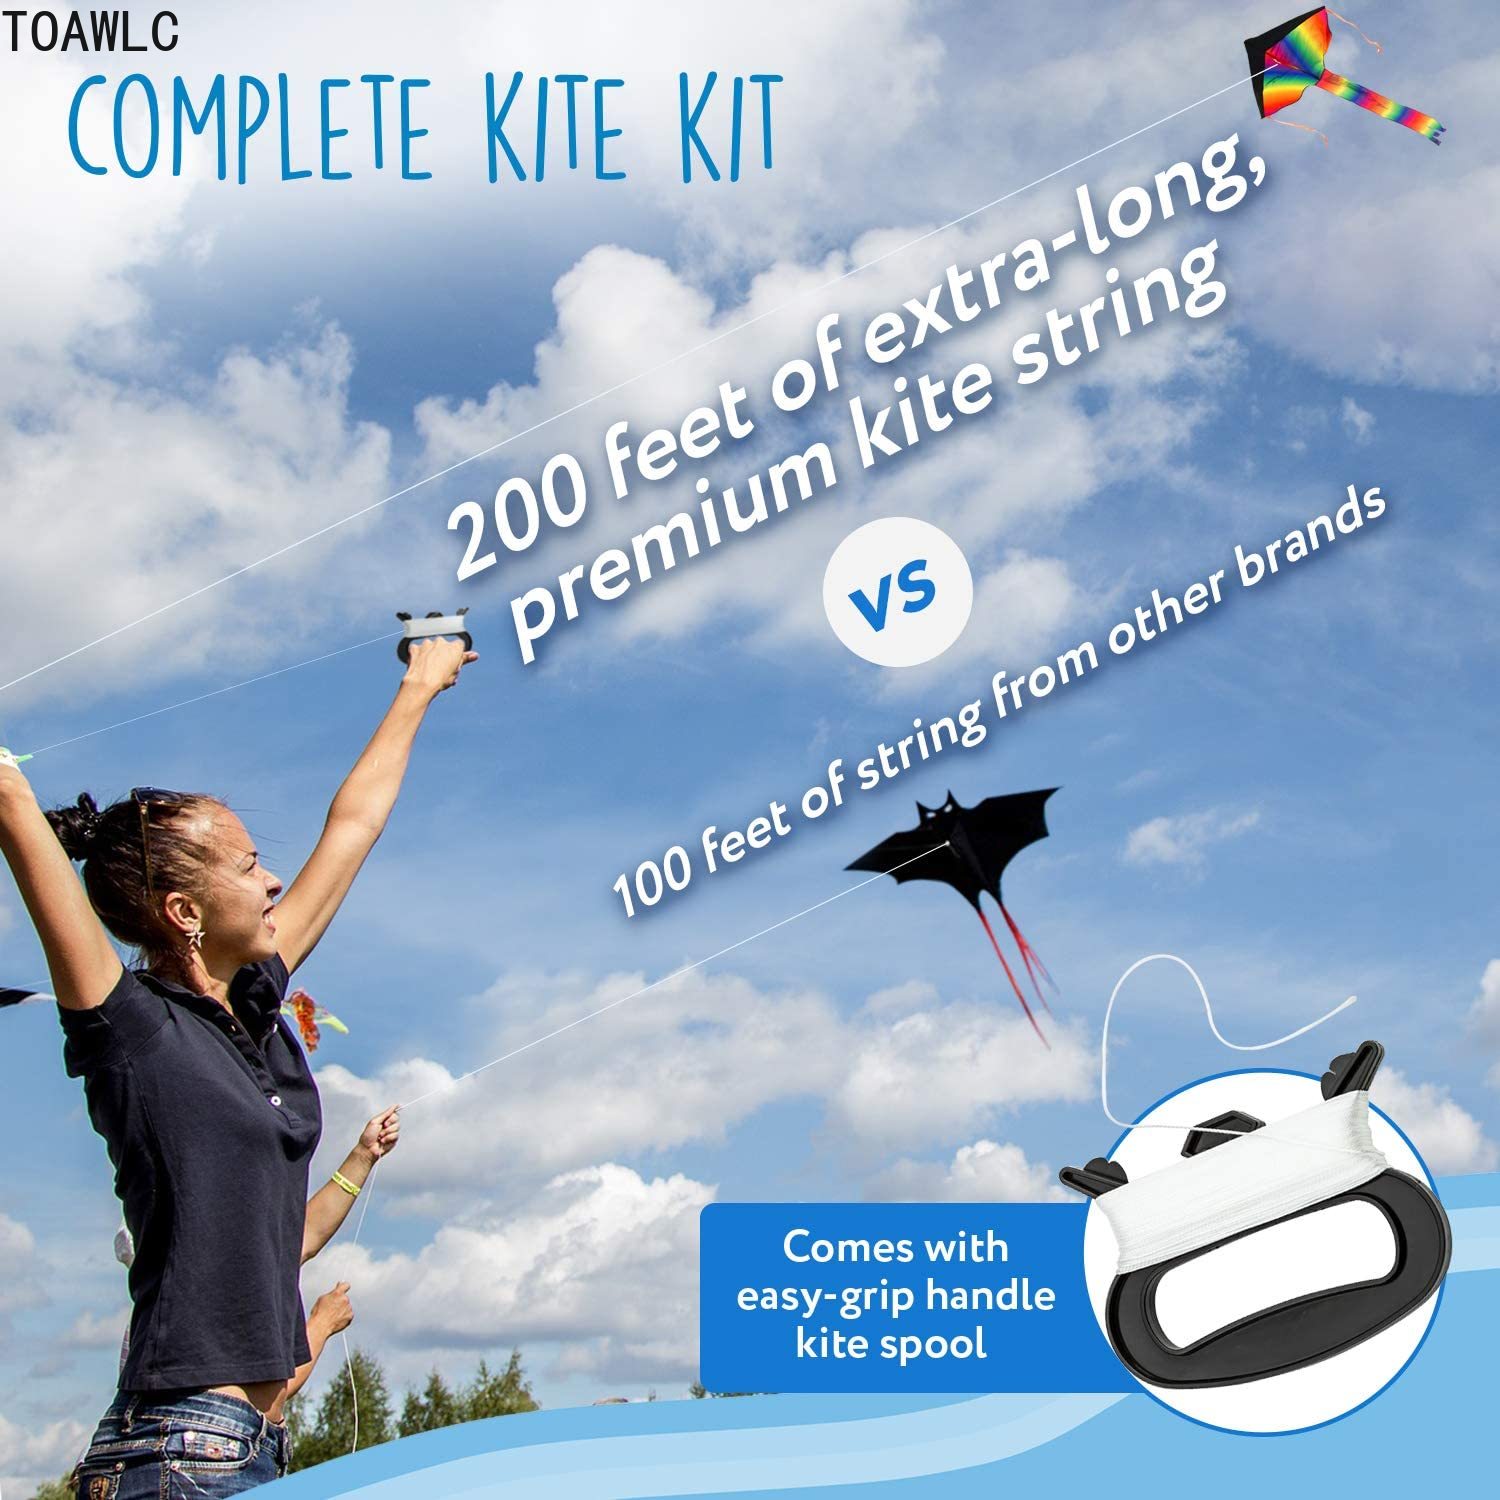 Kite Surfing ราคาถูก ซื้อออนไลน์ที่ - ส.ค. 2022 | Lazada.co.th